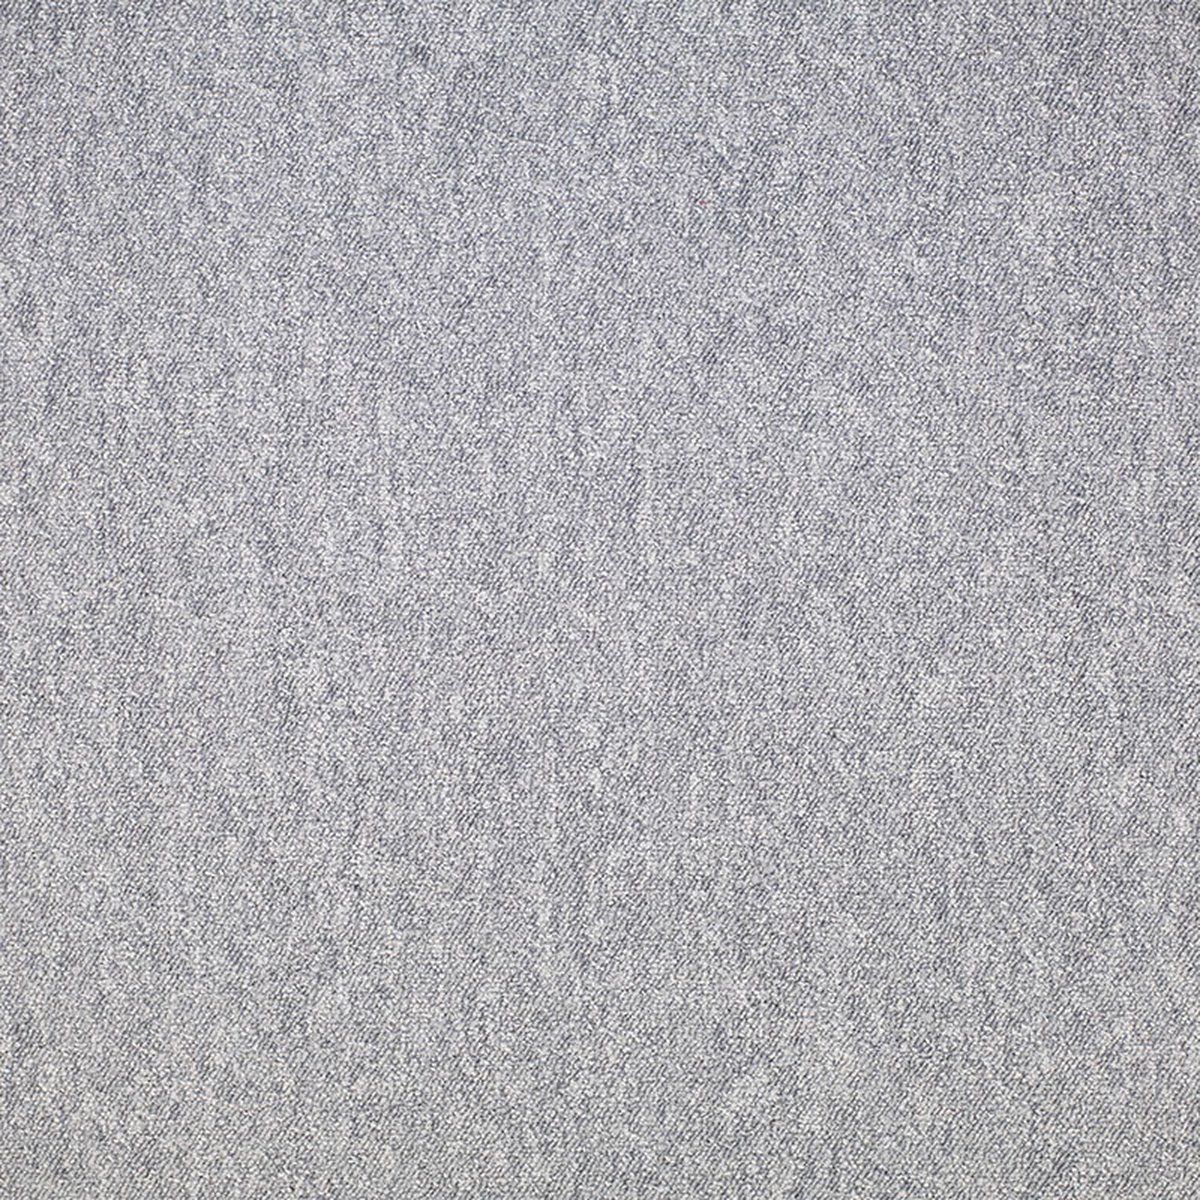 Dalle moquette bouclée - Gris anthracite - 50 x 50 cm - Cdiscount